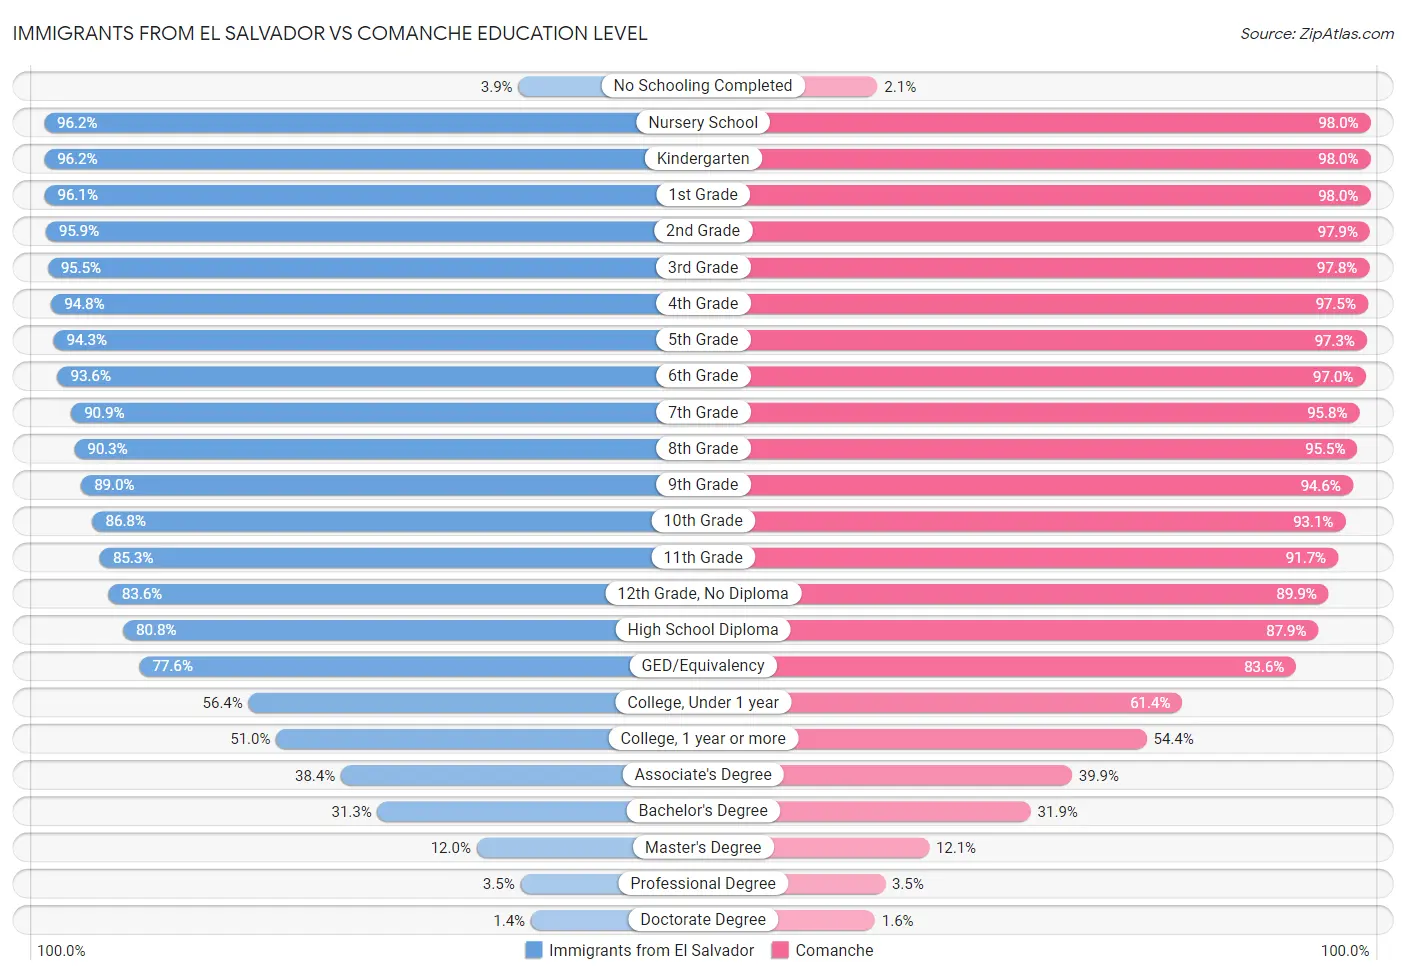 Immigrants from El Salvador vs Comanche Education Level